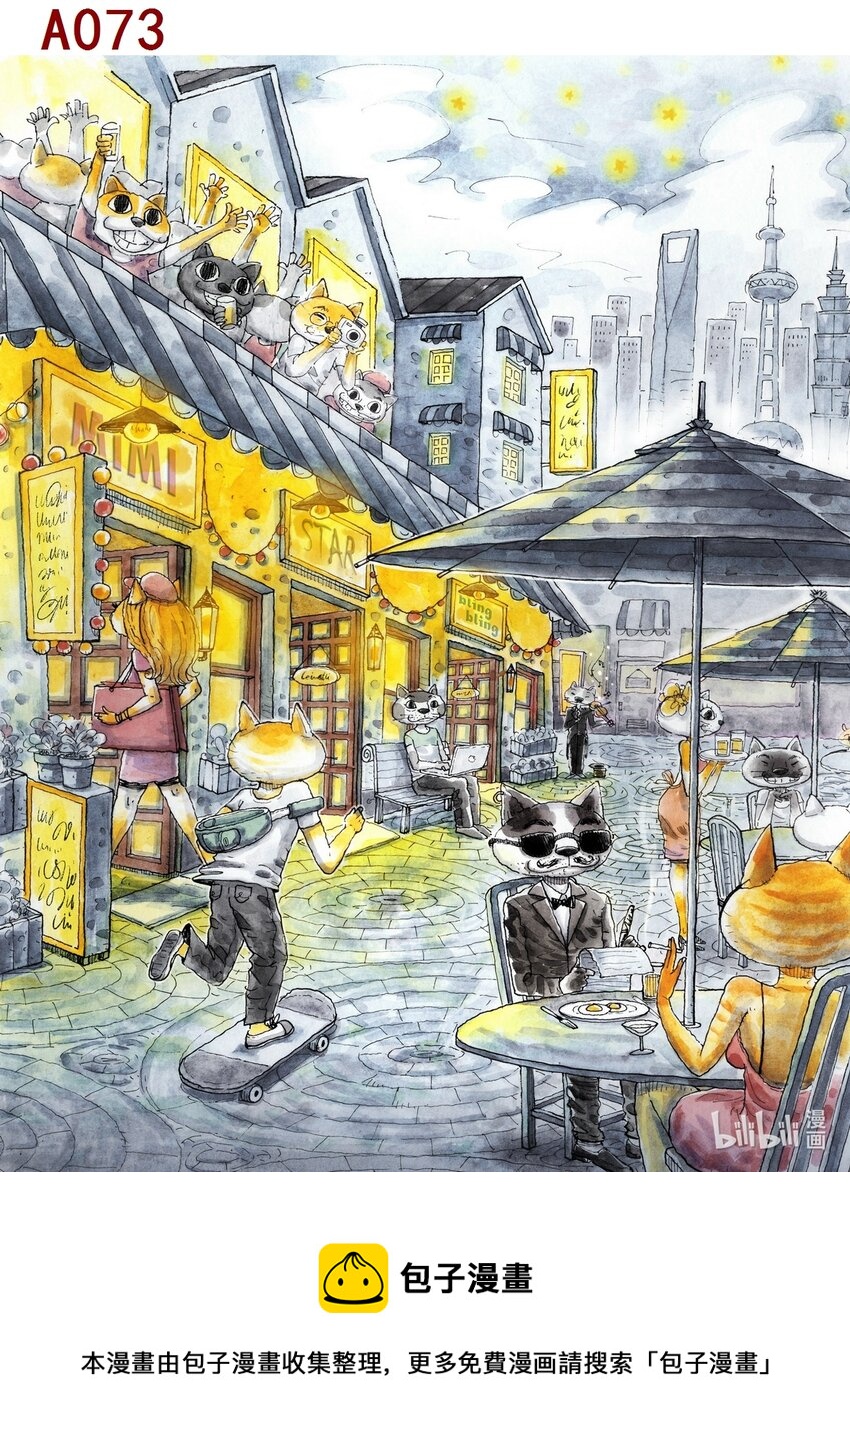 喜歡上海的理由 - 何康海 夜貓 - 1